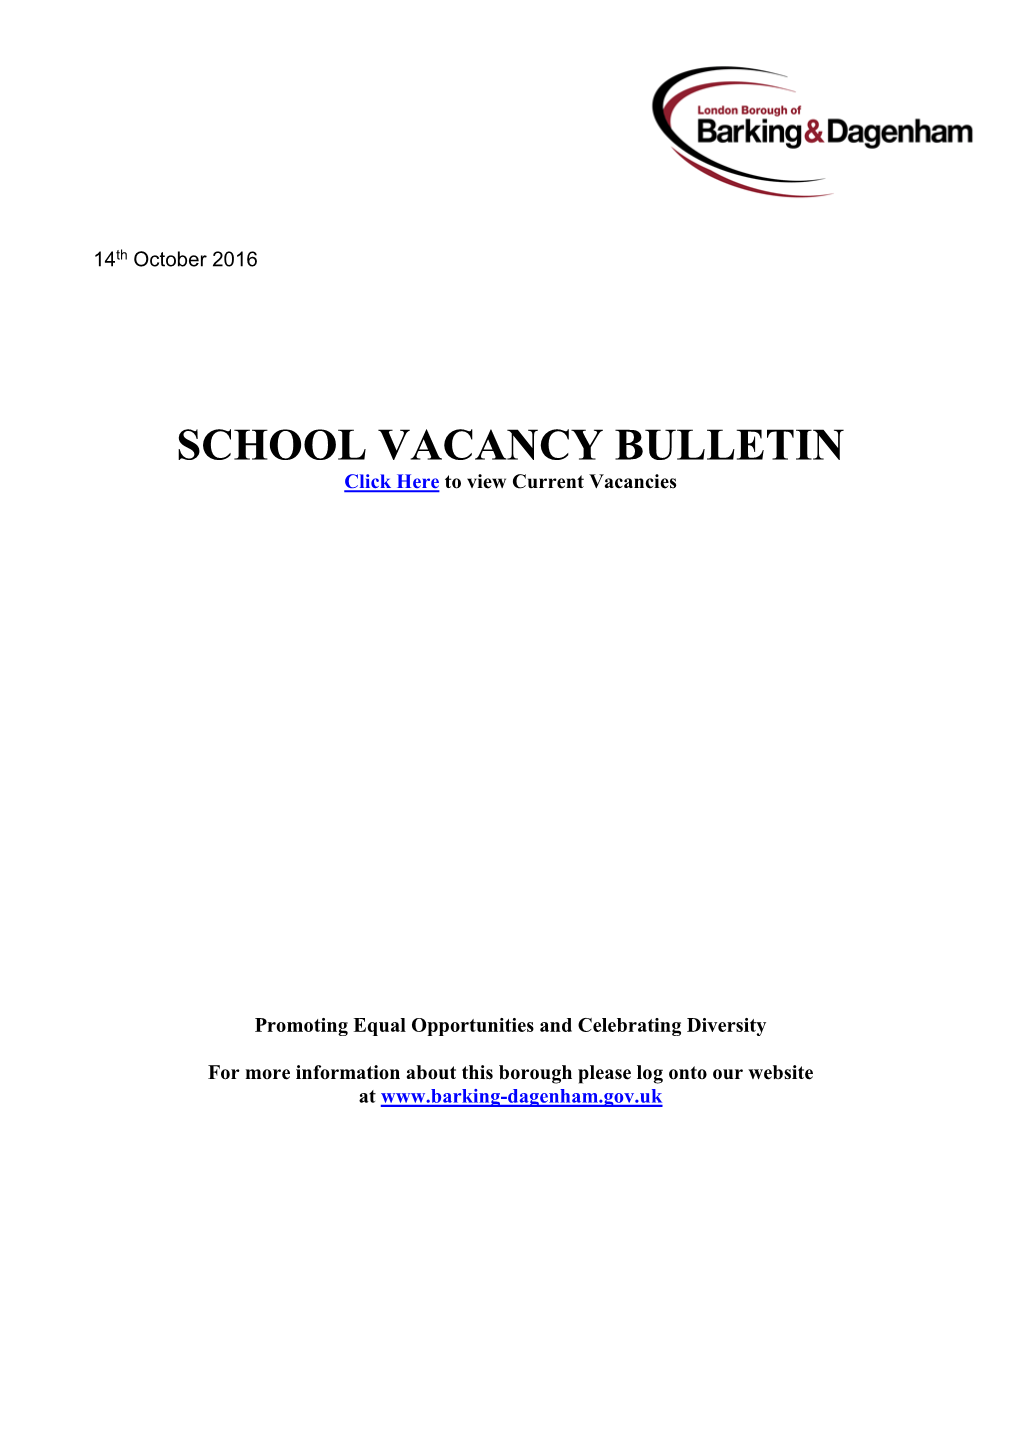 SCHOOL VACANCY BULLETIN Click Here to View Current Vacancies